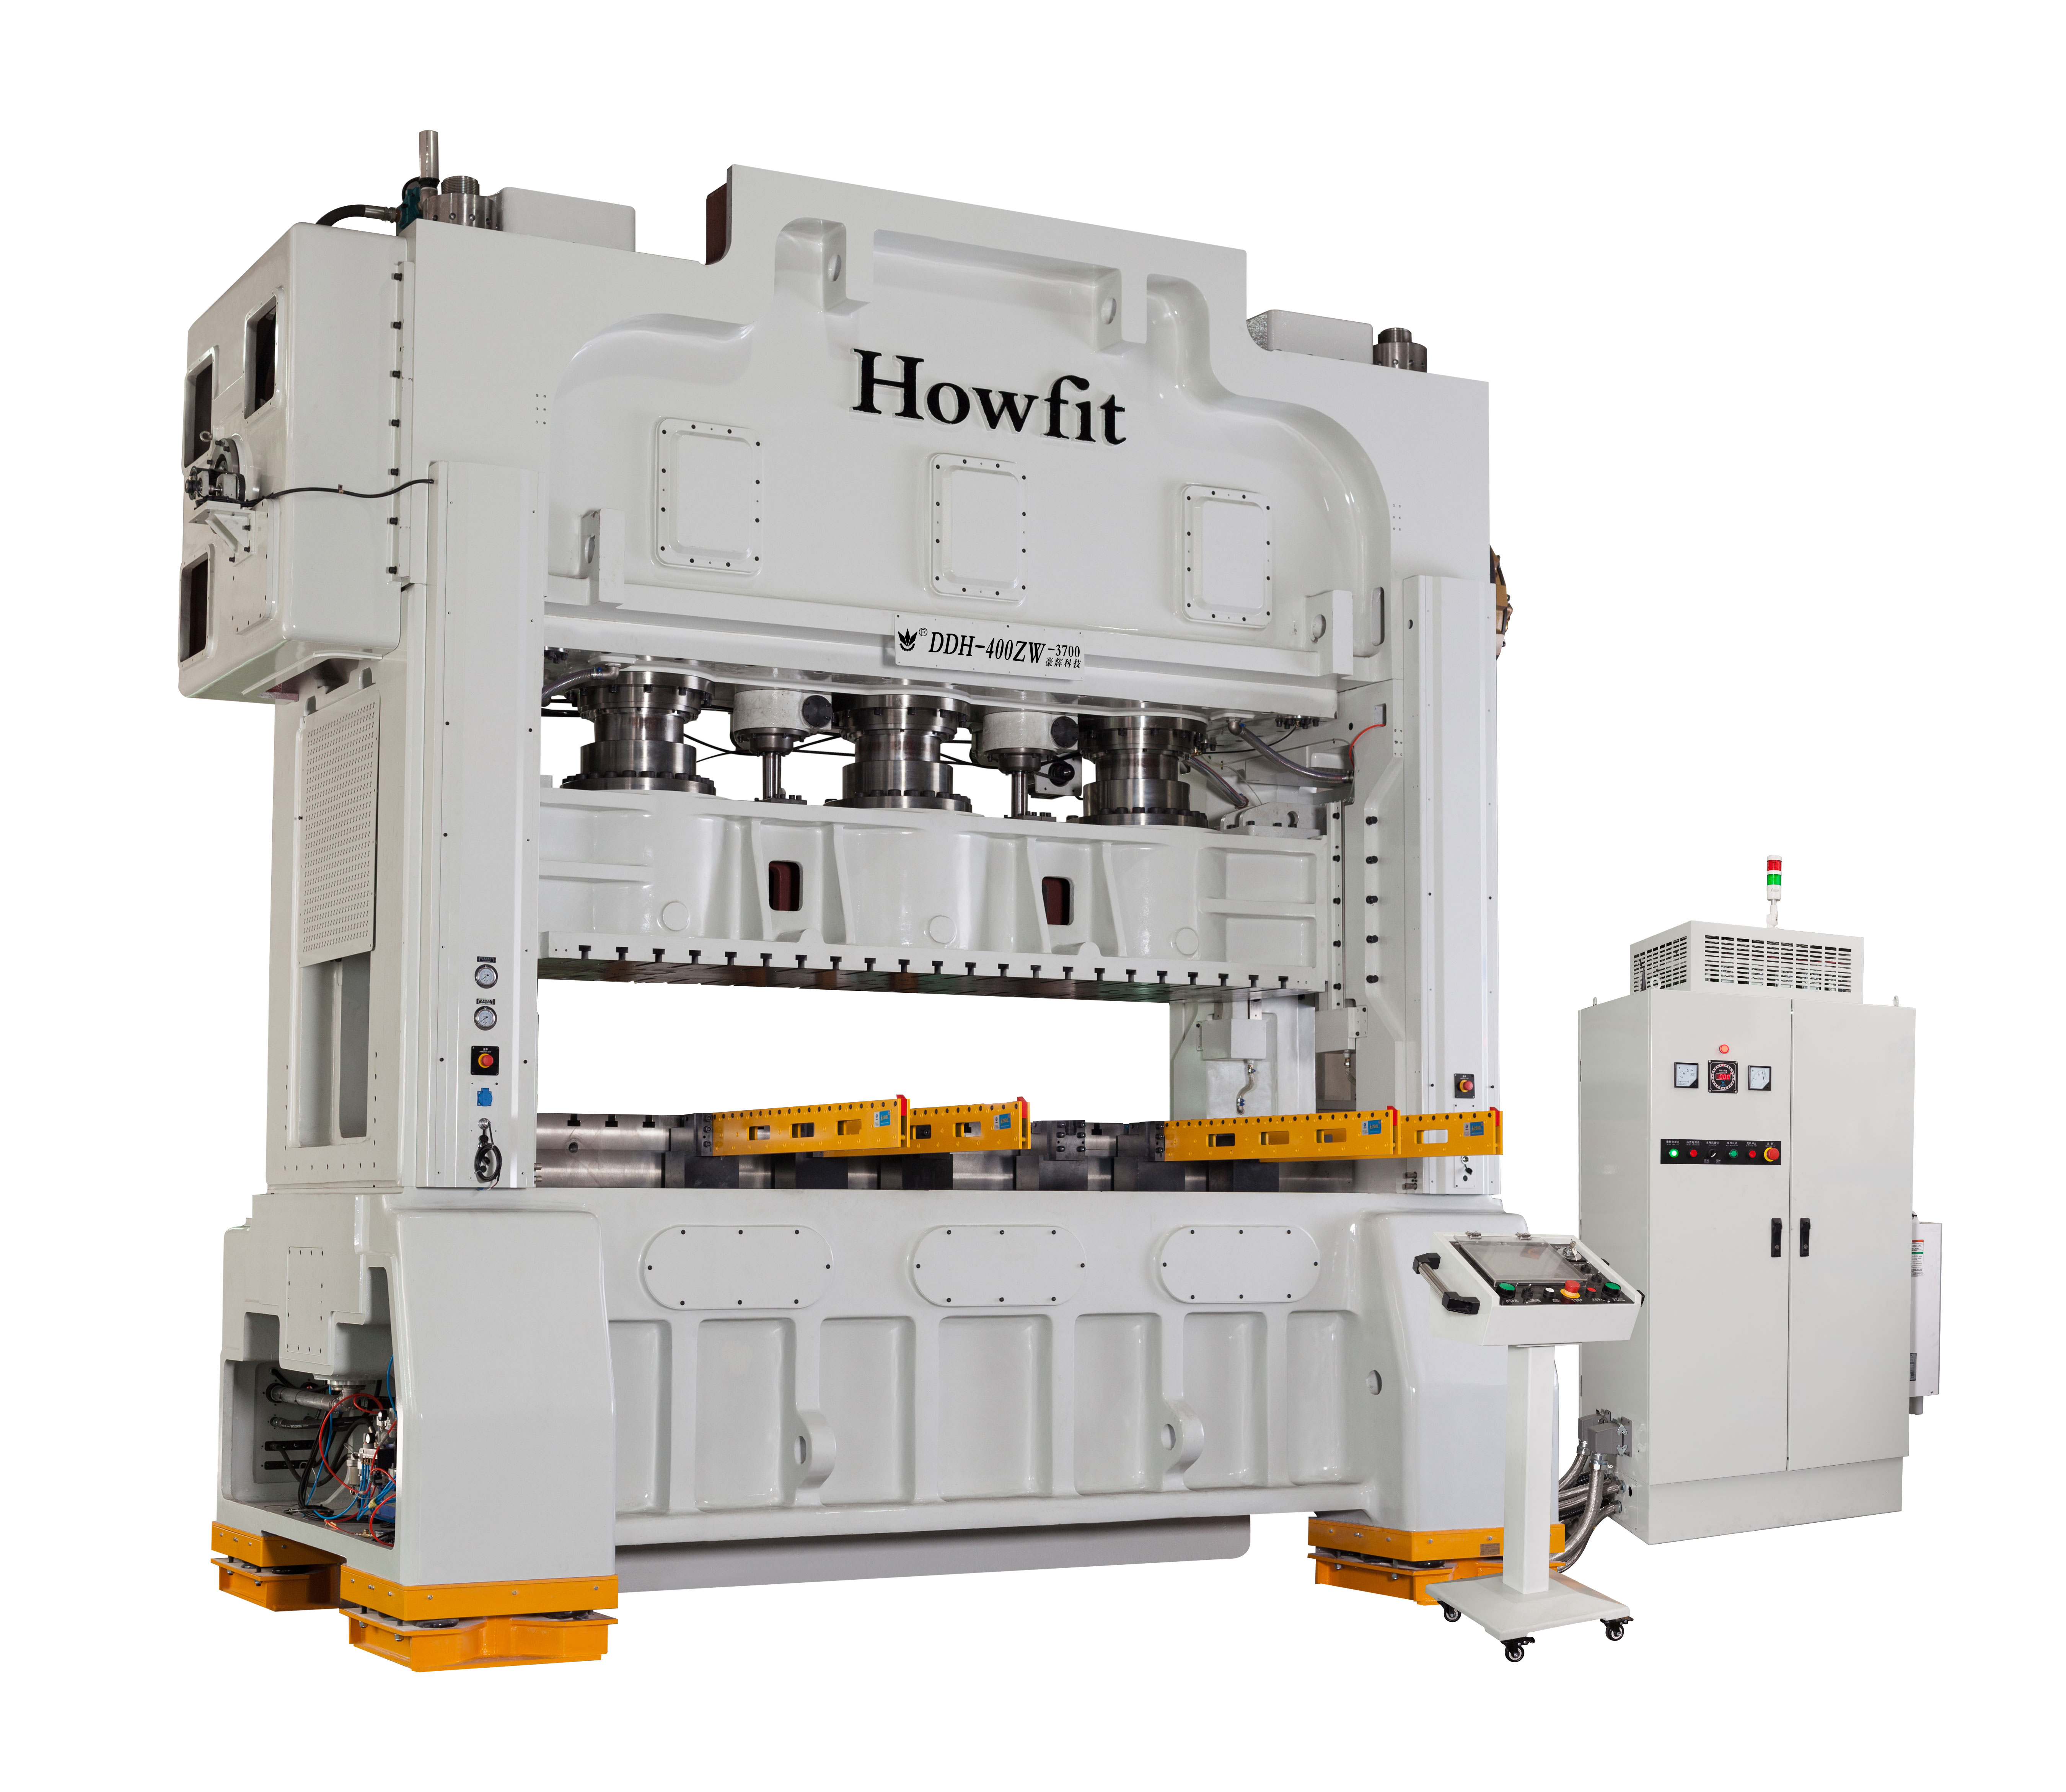 HowFIT DDH 400T ZW-3700 fabricandi qualitas certitudinis